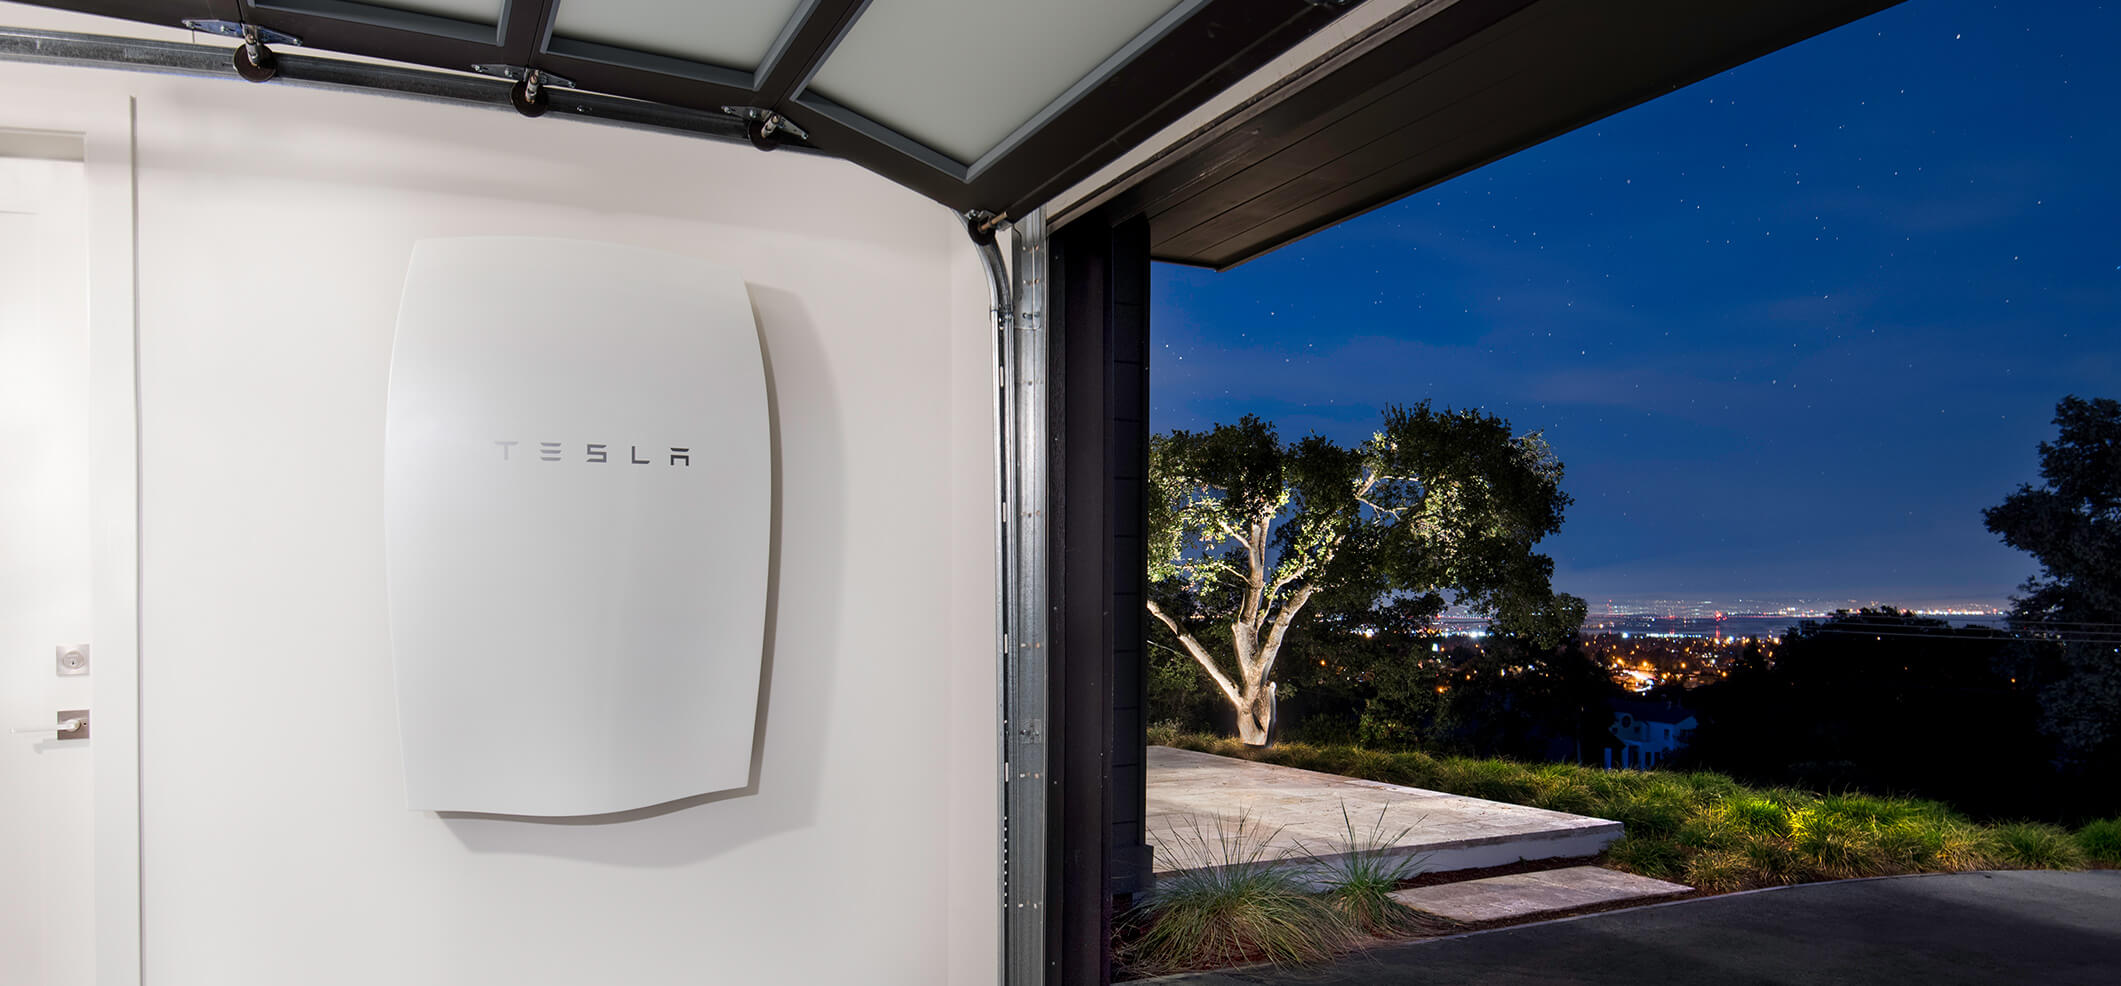 Teslas hembatteri i Australienska hem